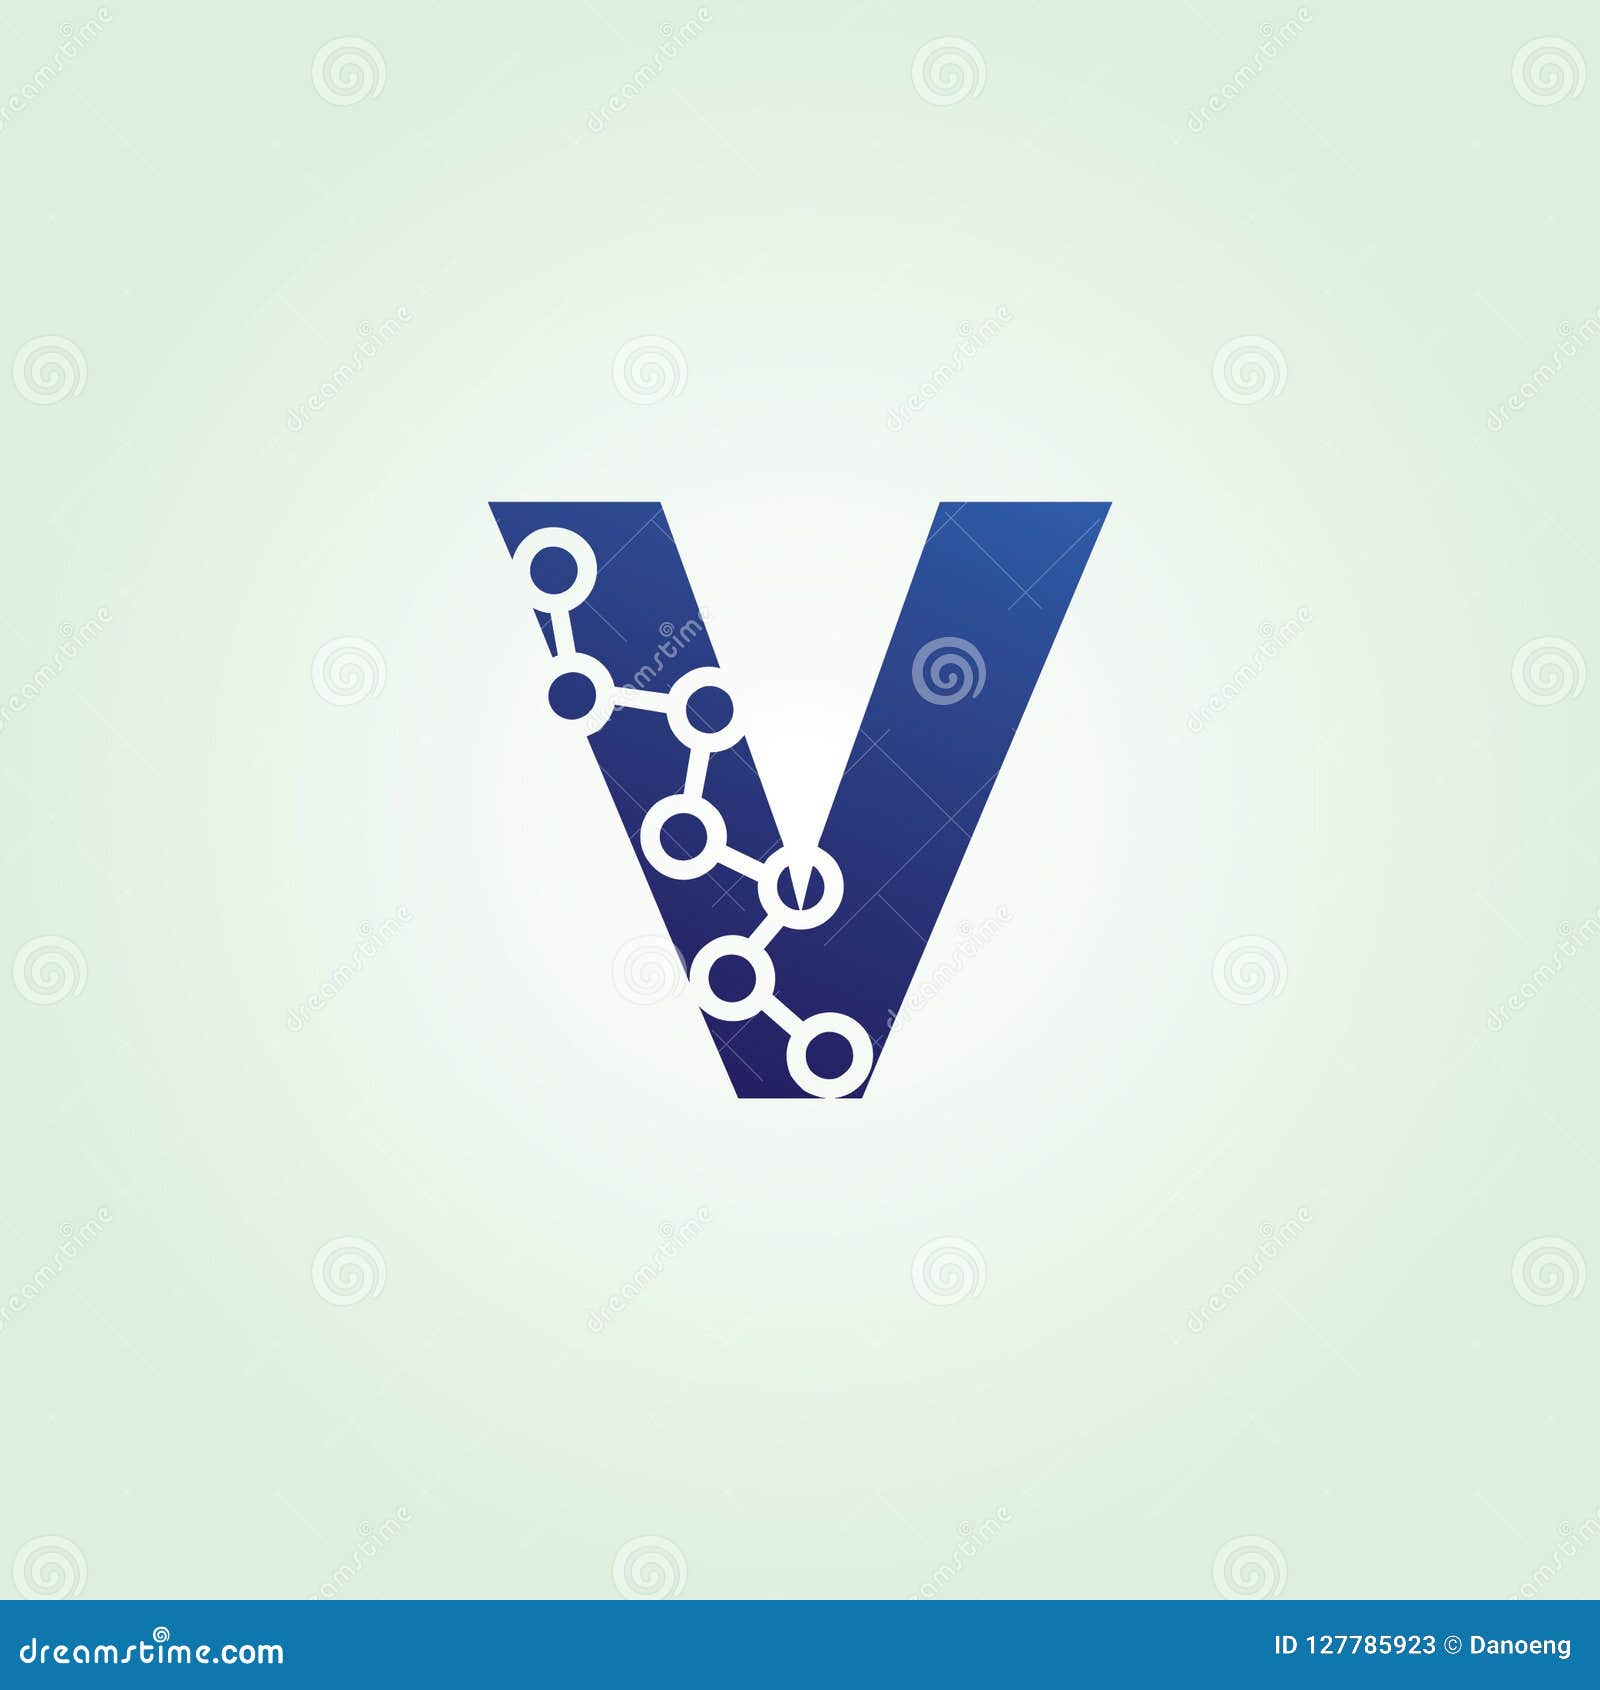 Blue Data Technology V Letter Logo Stock Illustration Illustration Of Architecture Green